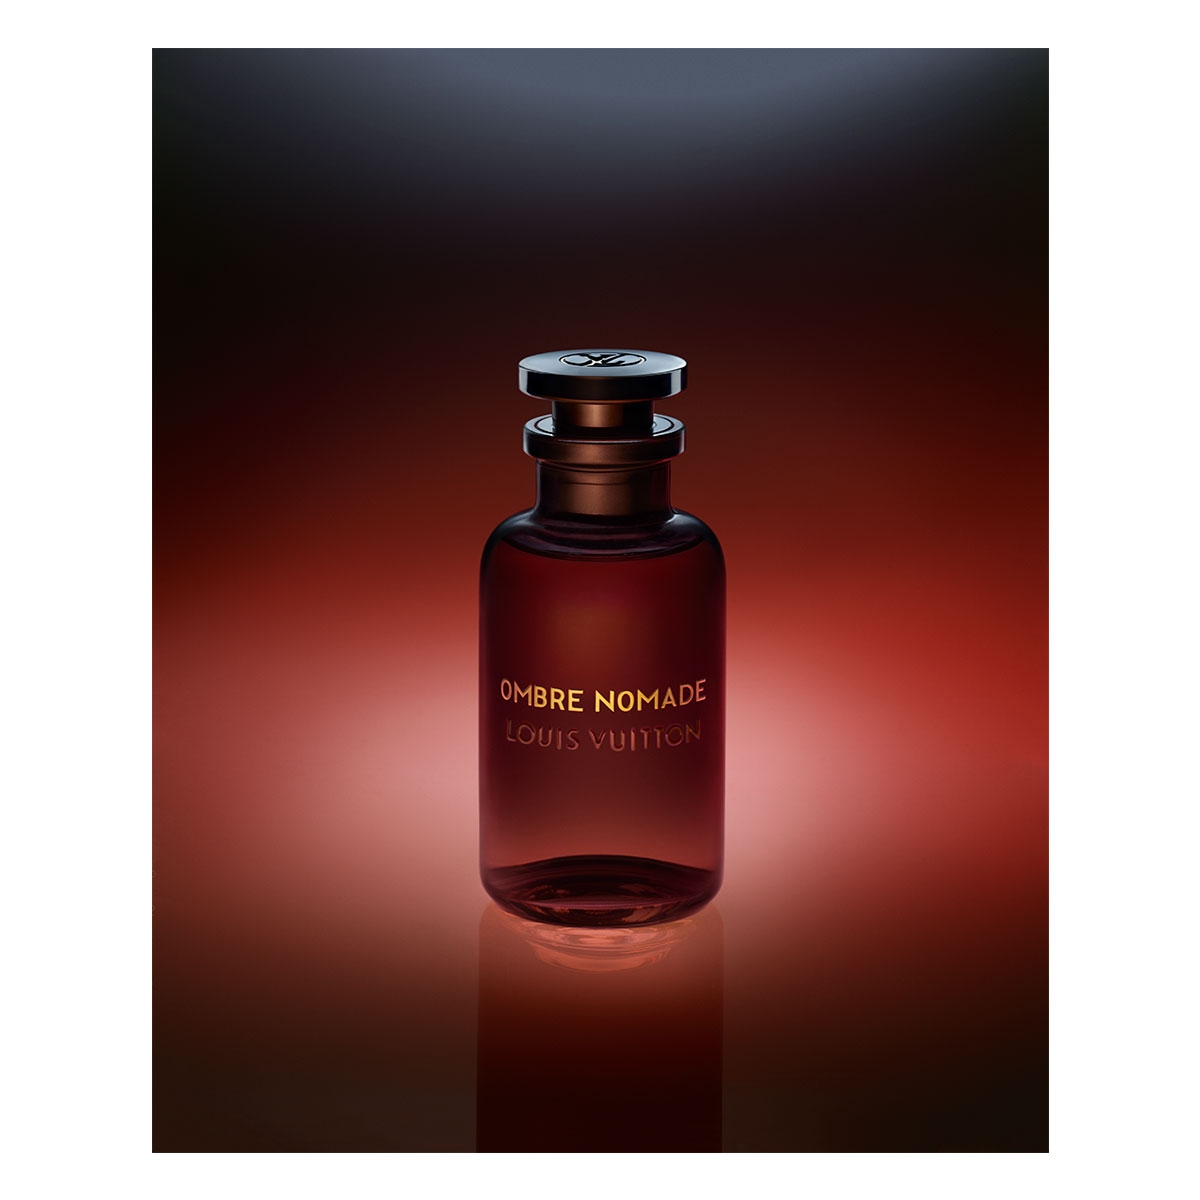 Louis Vuitton Ombre Nomade, novi unisex parfem